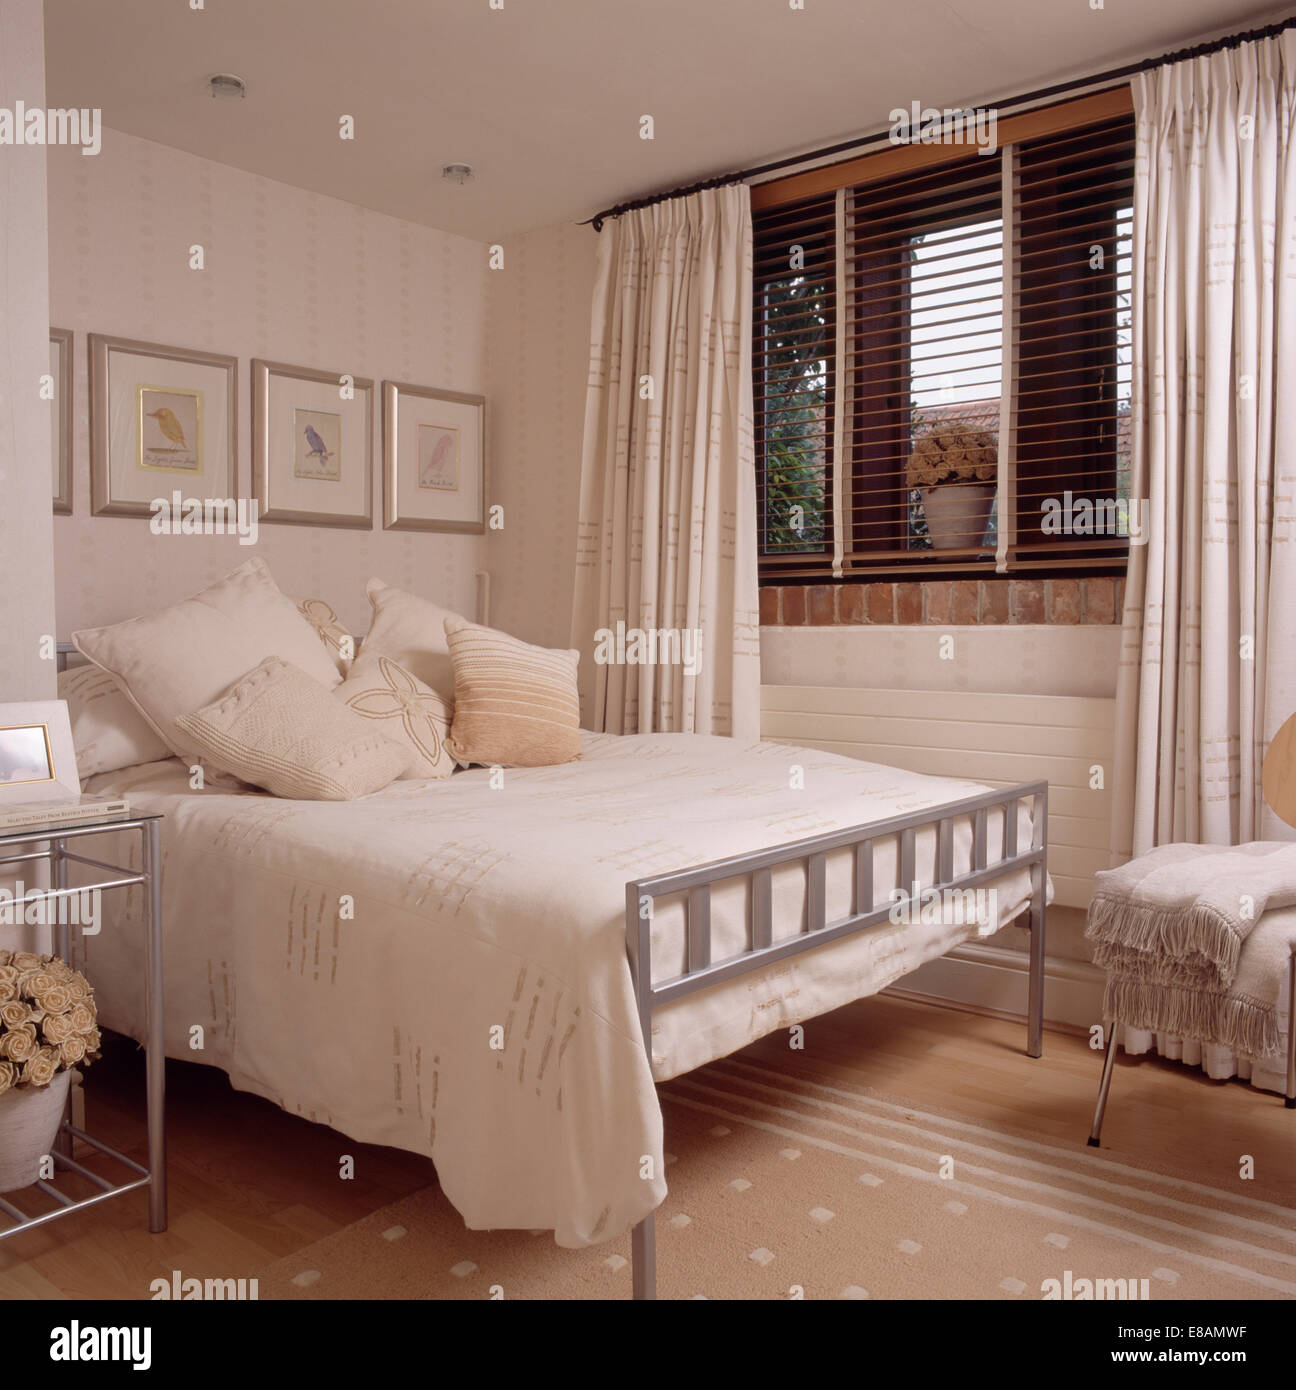 Cuscini color crema e il coperchio in metallo semplice letto in camera da letto moderno con tende di color crema e tenda a veneziana sulla finestra Foto Stock